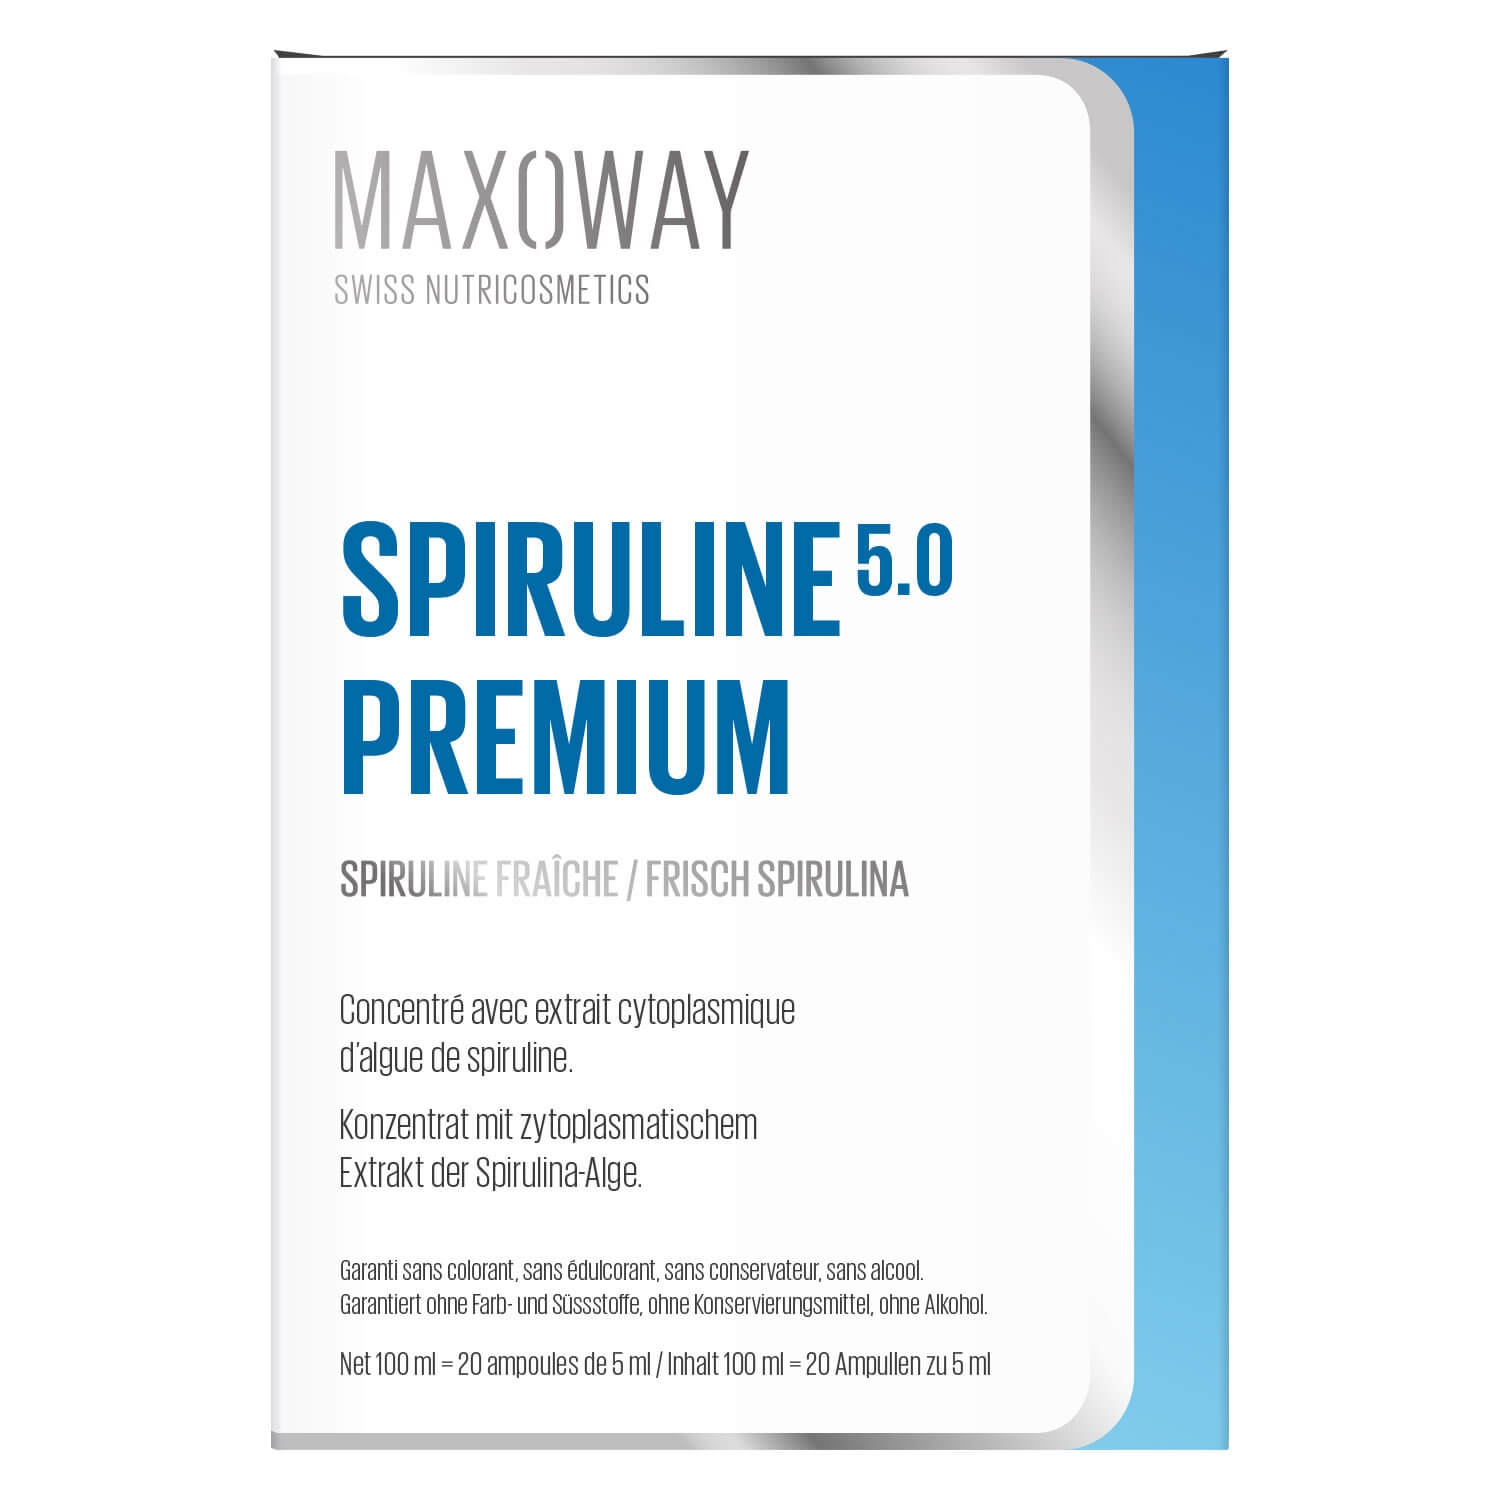 Produktbild von Maxoway - Spiruline 5.0 Premium